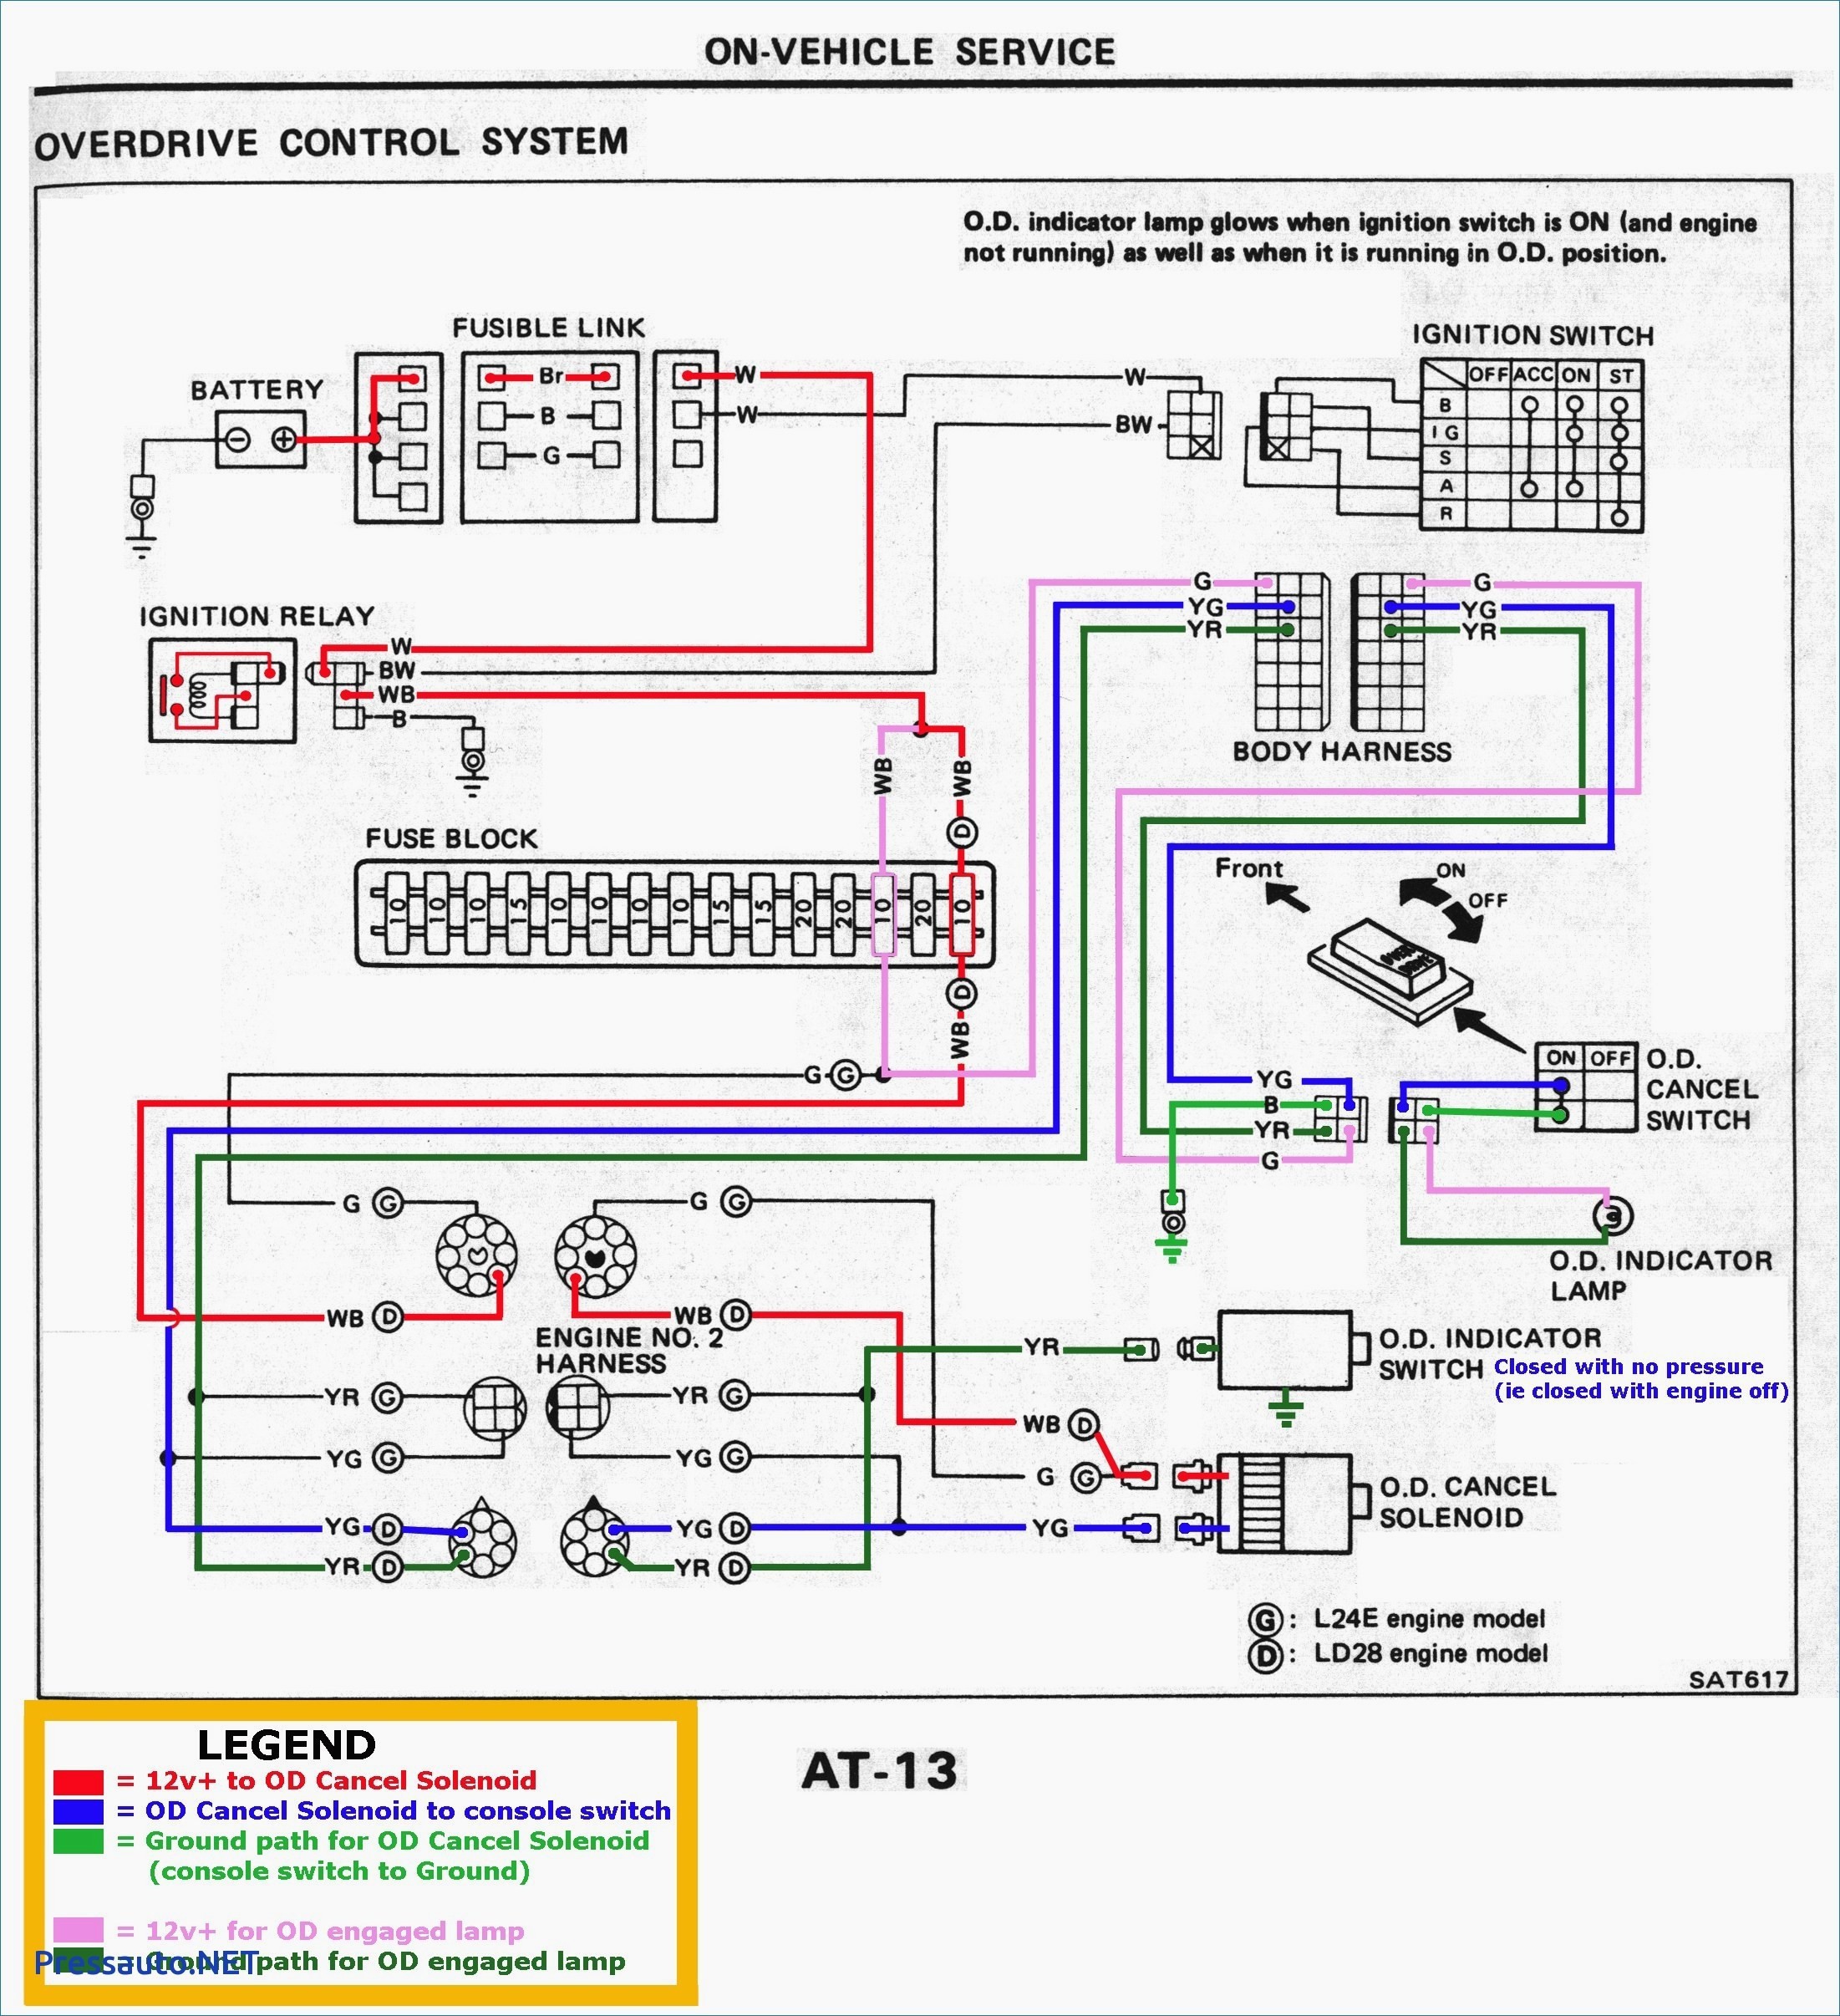 Mercedes Benz Engine Diagram Wiring Diagram Auto Alarm Best Best Mercedes Benz Wiring Diagrams Of Mercedes Benz Engine Diagram